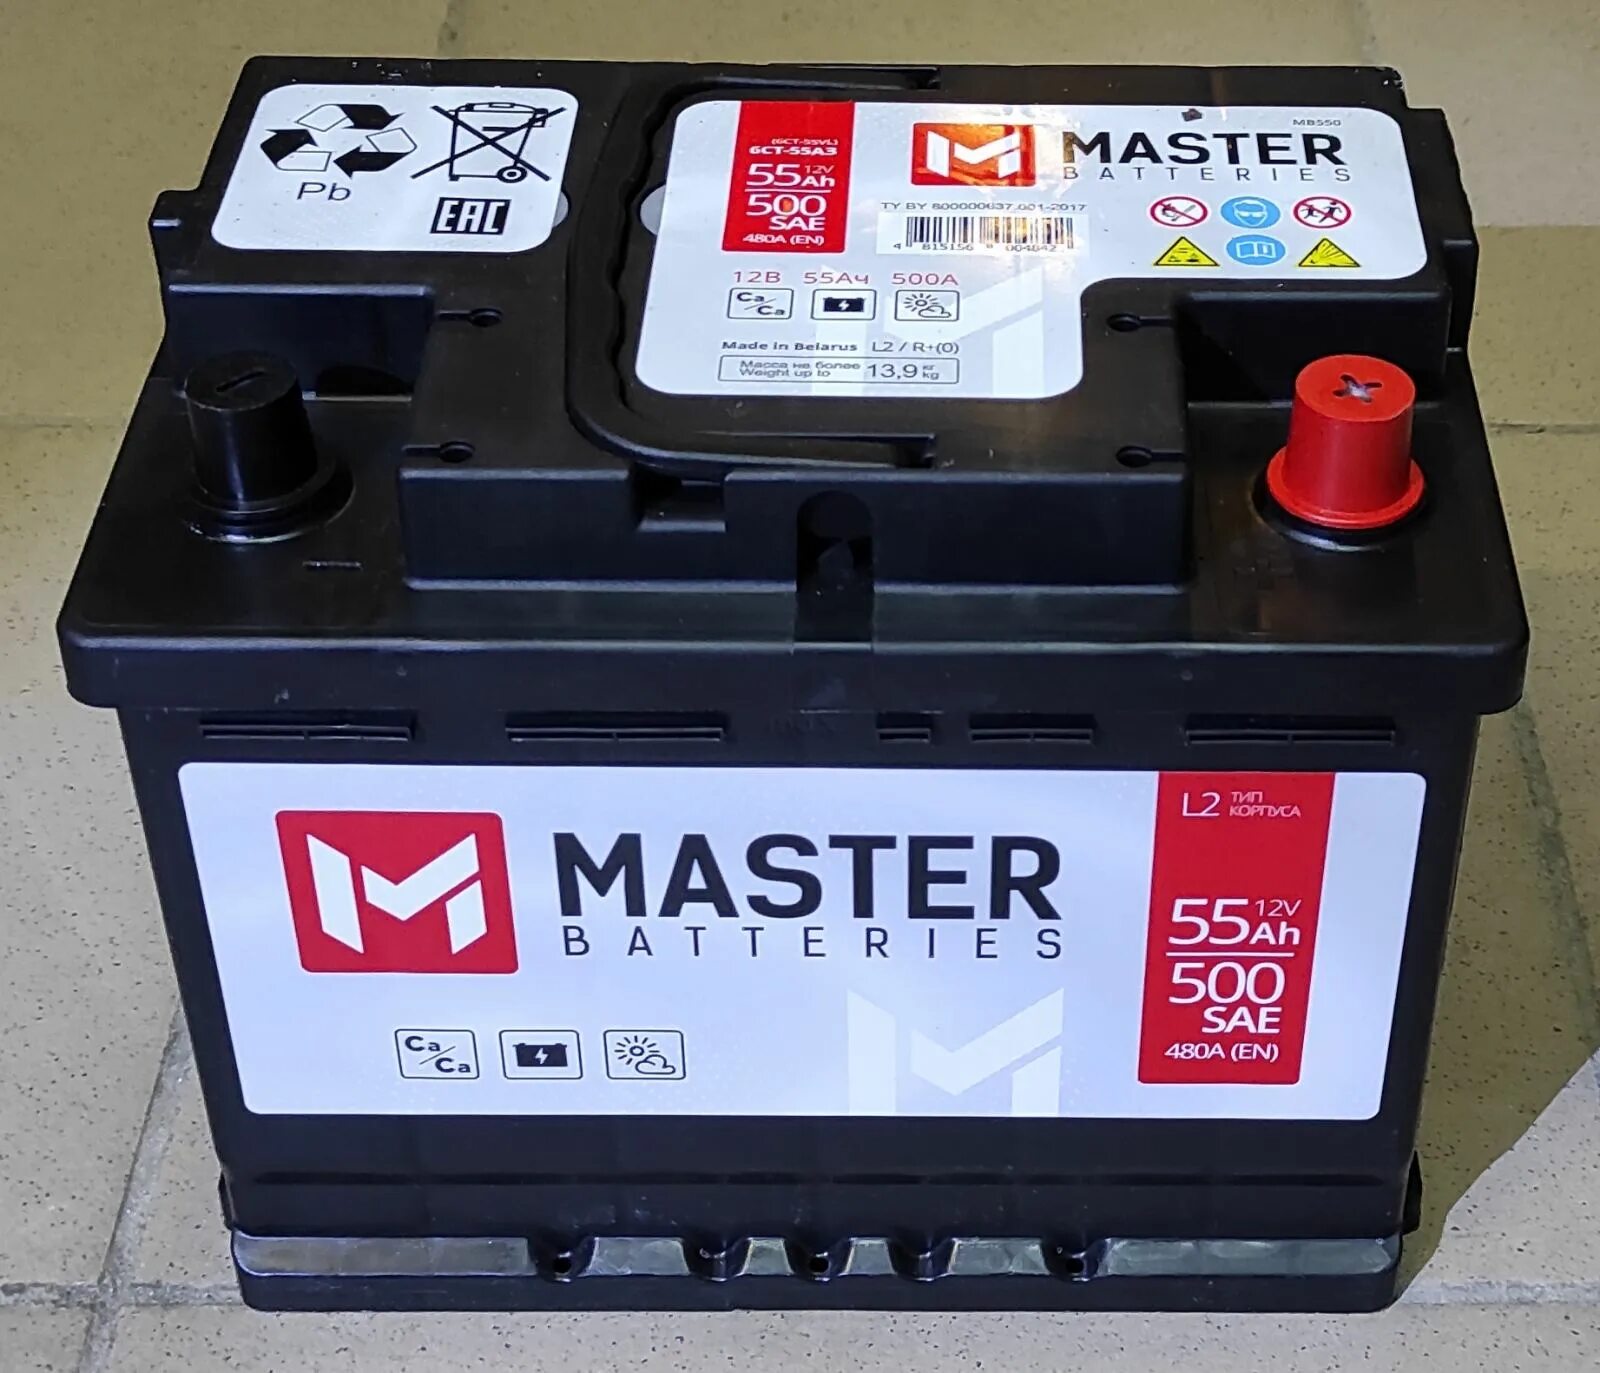 Аккумулятор Master batteries140 а/ч. Аккумулятор Master Batteries 55 a/h. Master Batteries (60 Ah). Master Batteries аккумулятор 16v.